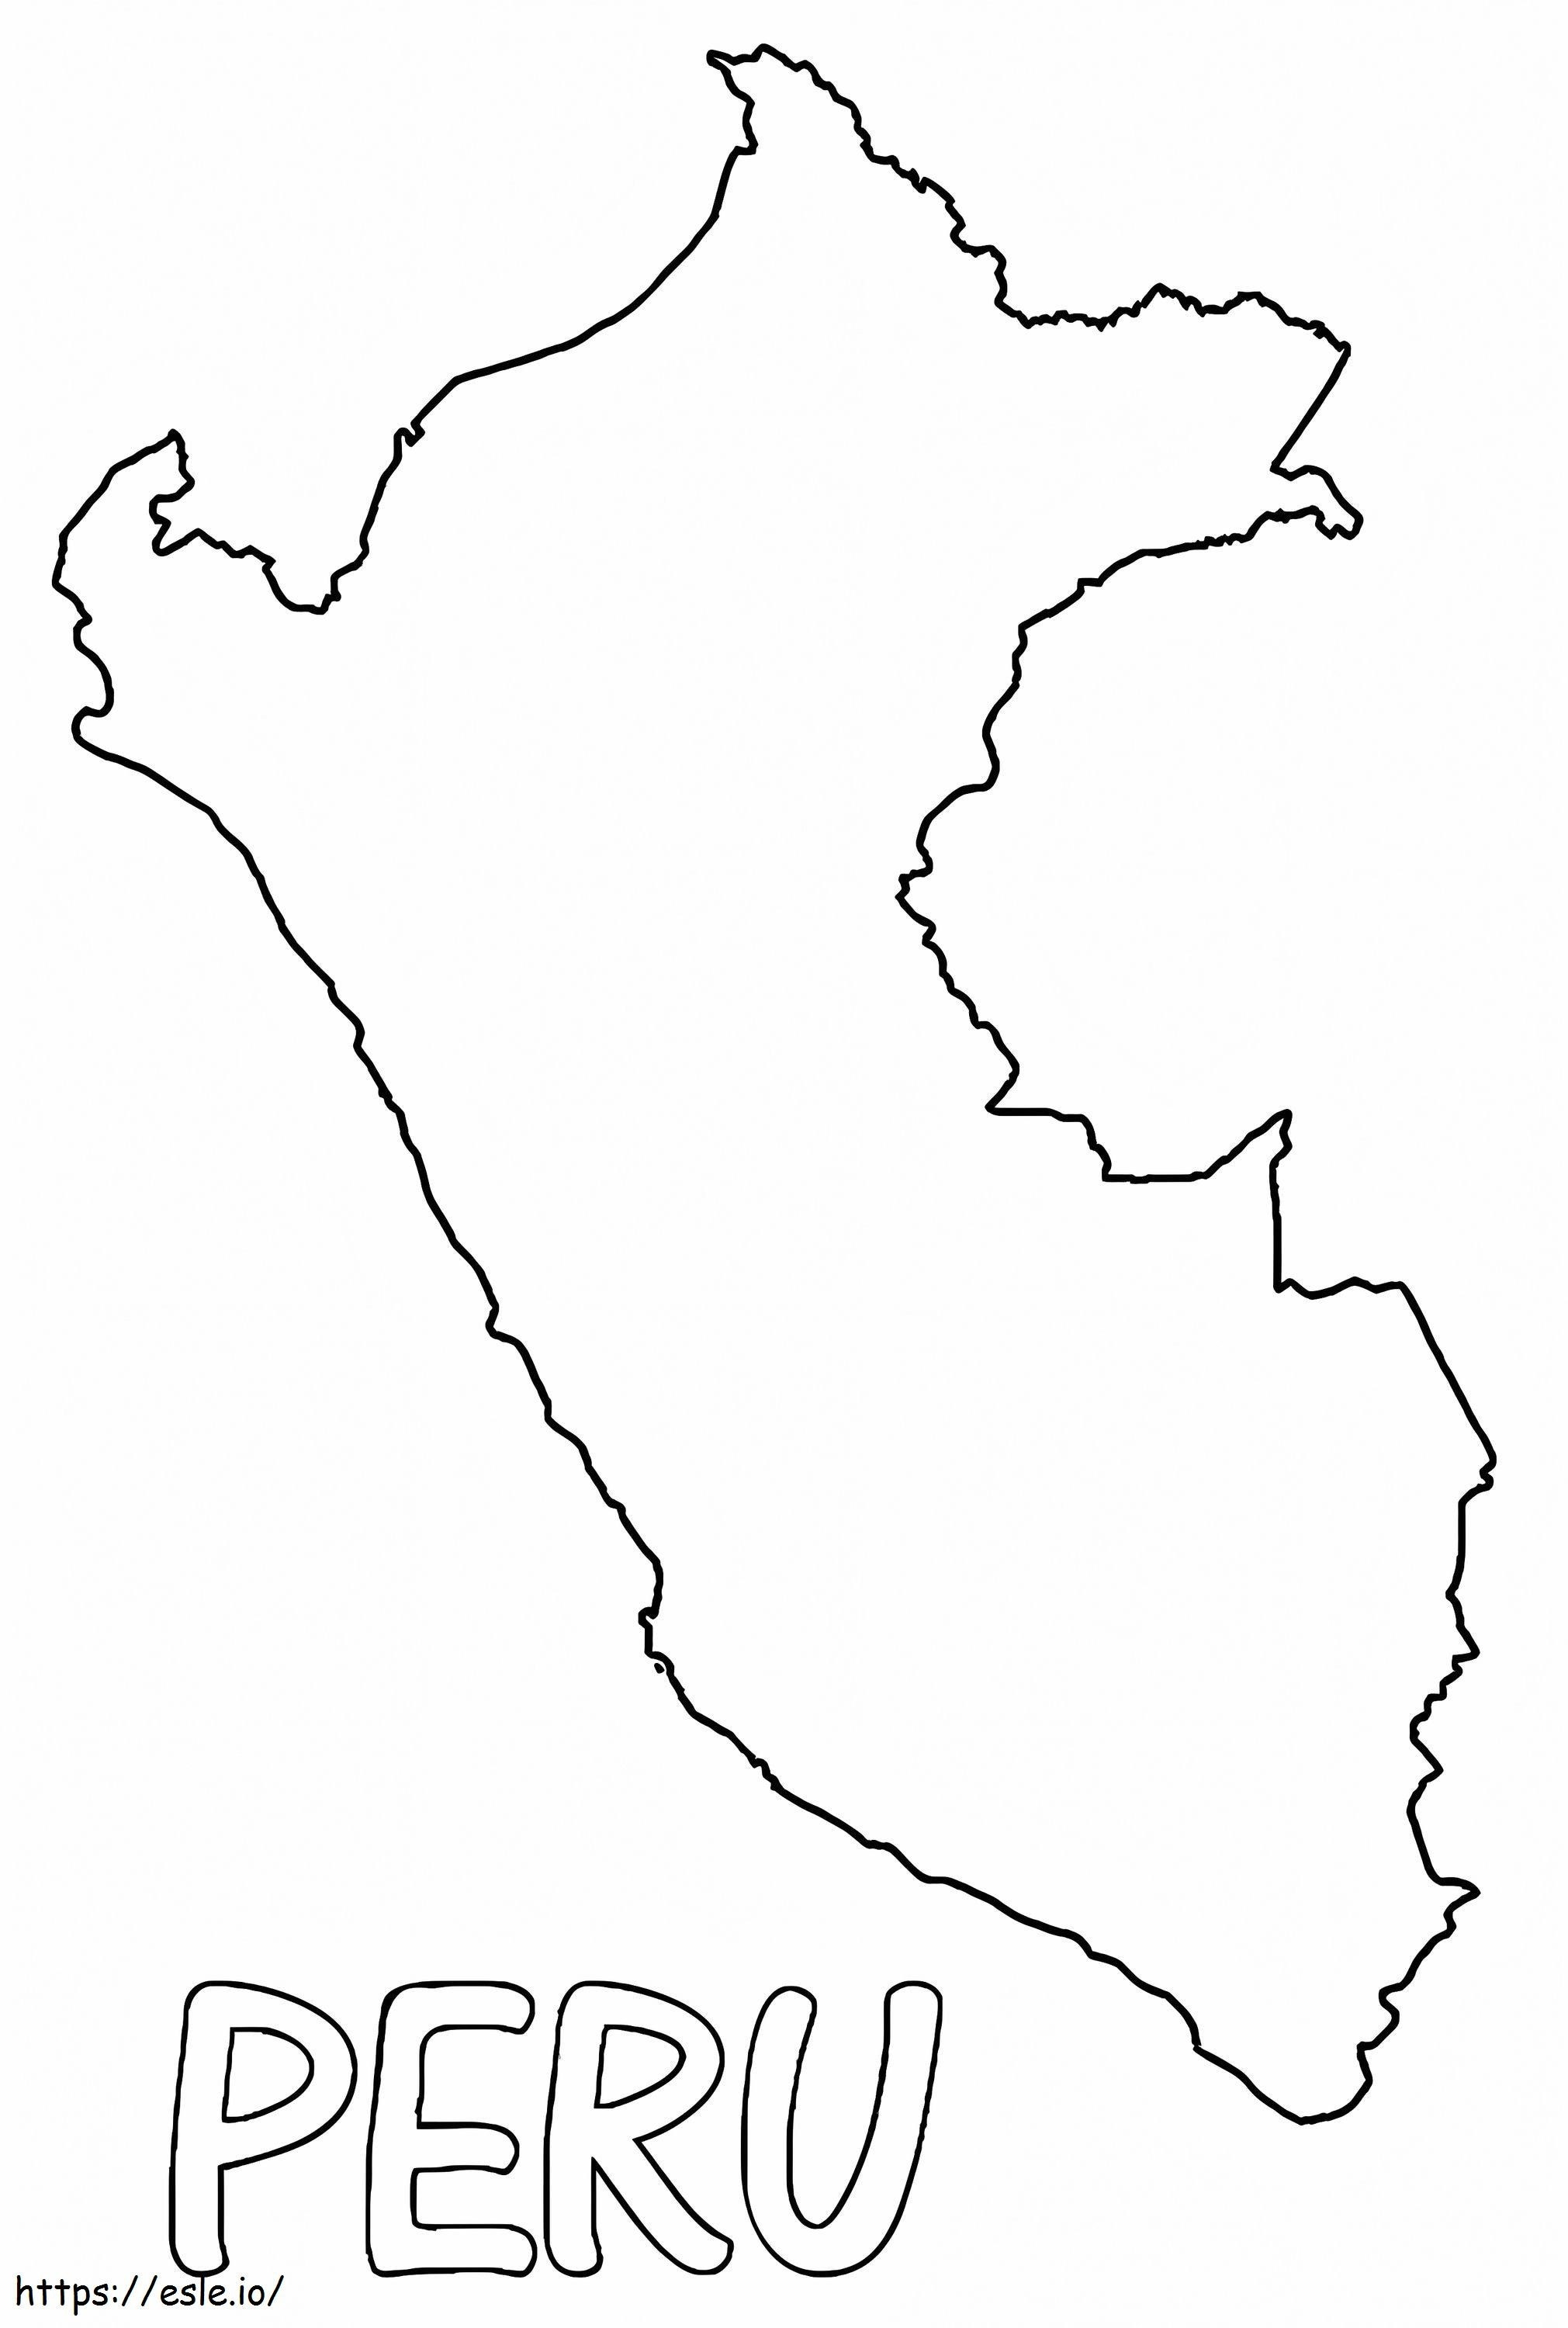 Zarys mapy Peru kolorowanka